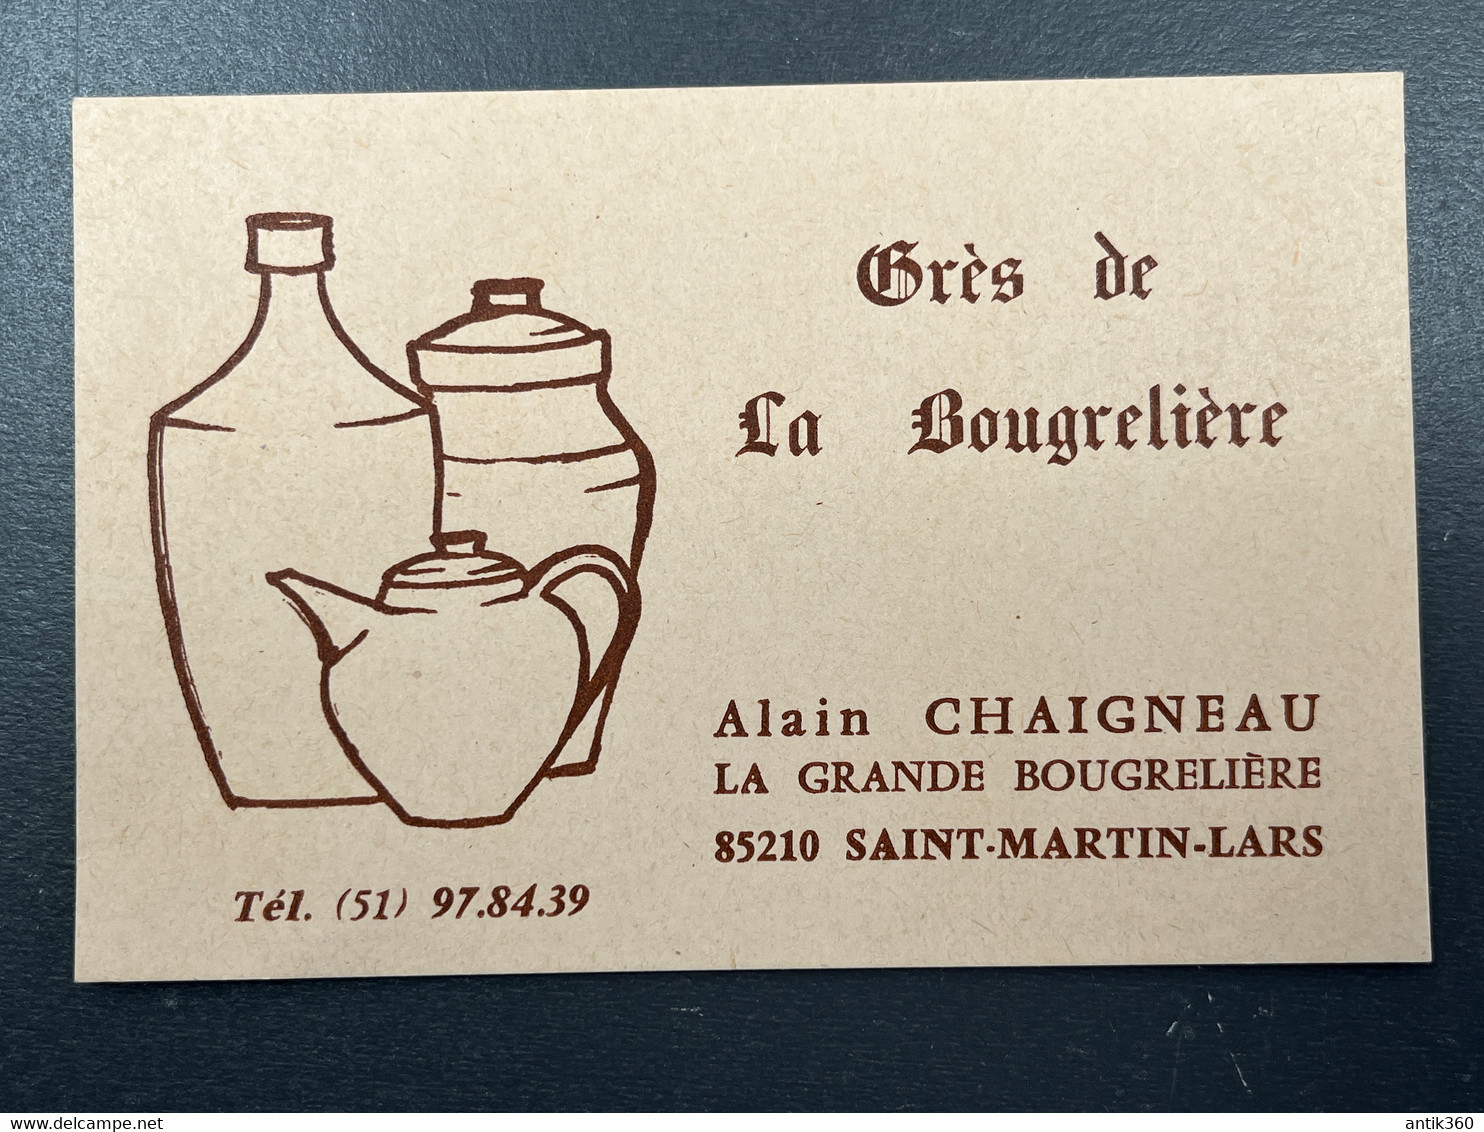 Carte De Visite Ancienne Grès De La Bougrelière Alain Chaigneau 85 Saint Martin Lars Vendée Céramique Poterie - Cartes De Visite